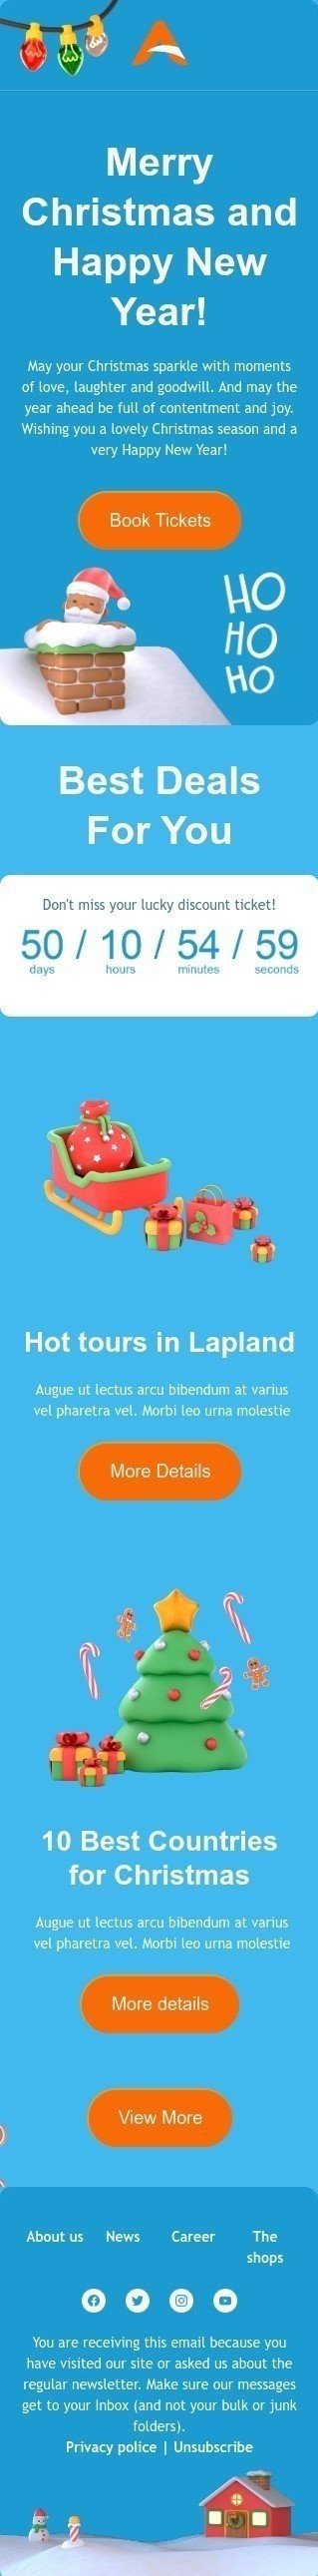 Plantilla de correo electrónico «Excursiones calientes en Laponia» de Navidad para la industria de aerolínea Vista de móvil